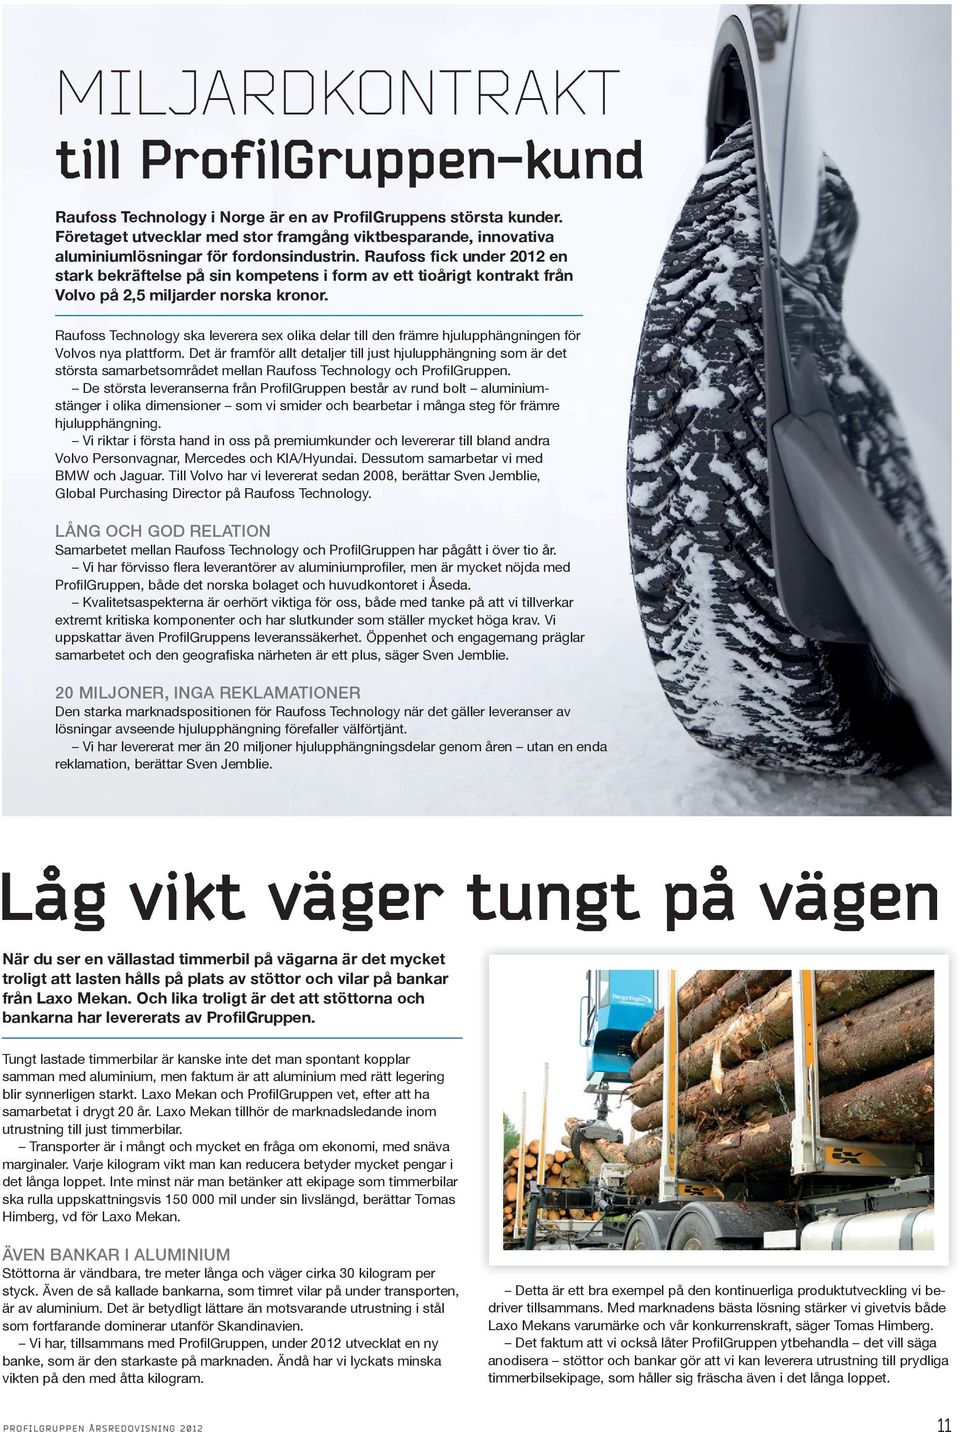 Raufoss fick under 2012 en stark bekräftelse på sin kompetens i form av ett tioårigt kontrakt från Volvo på 2,5 miljarder norska kronor.